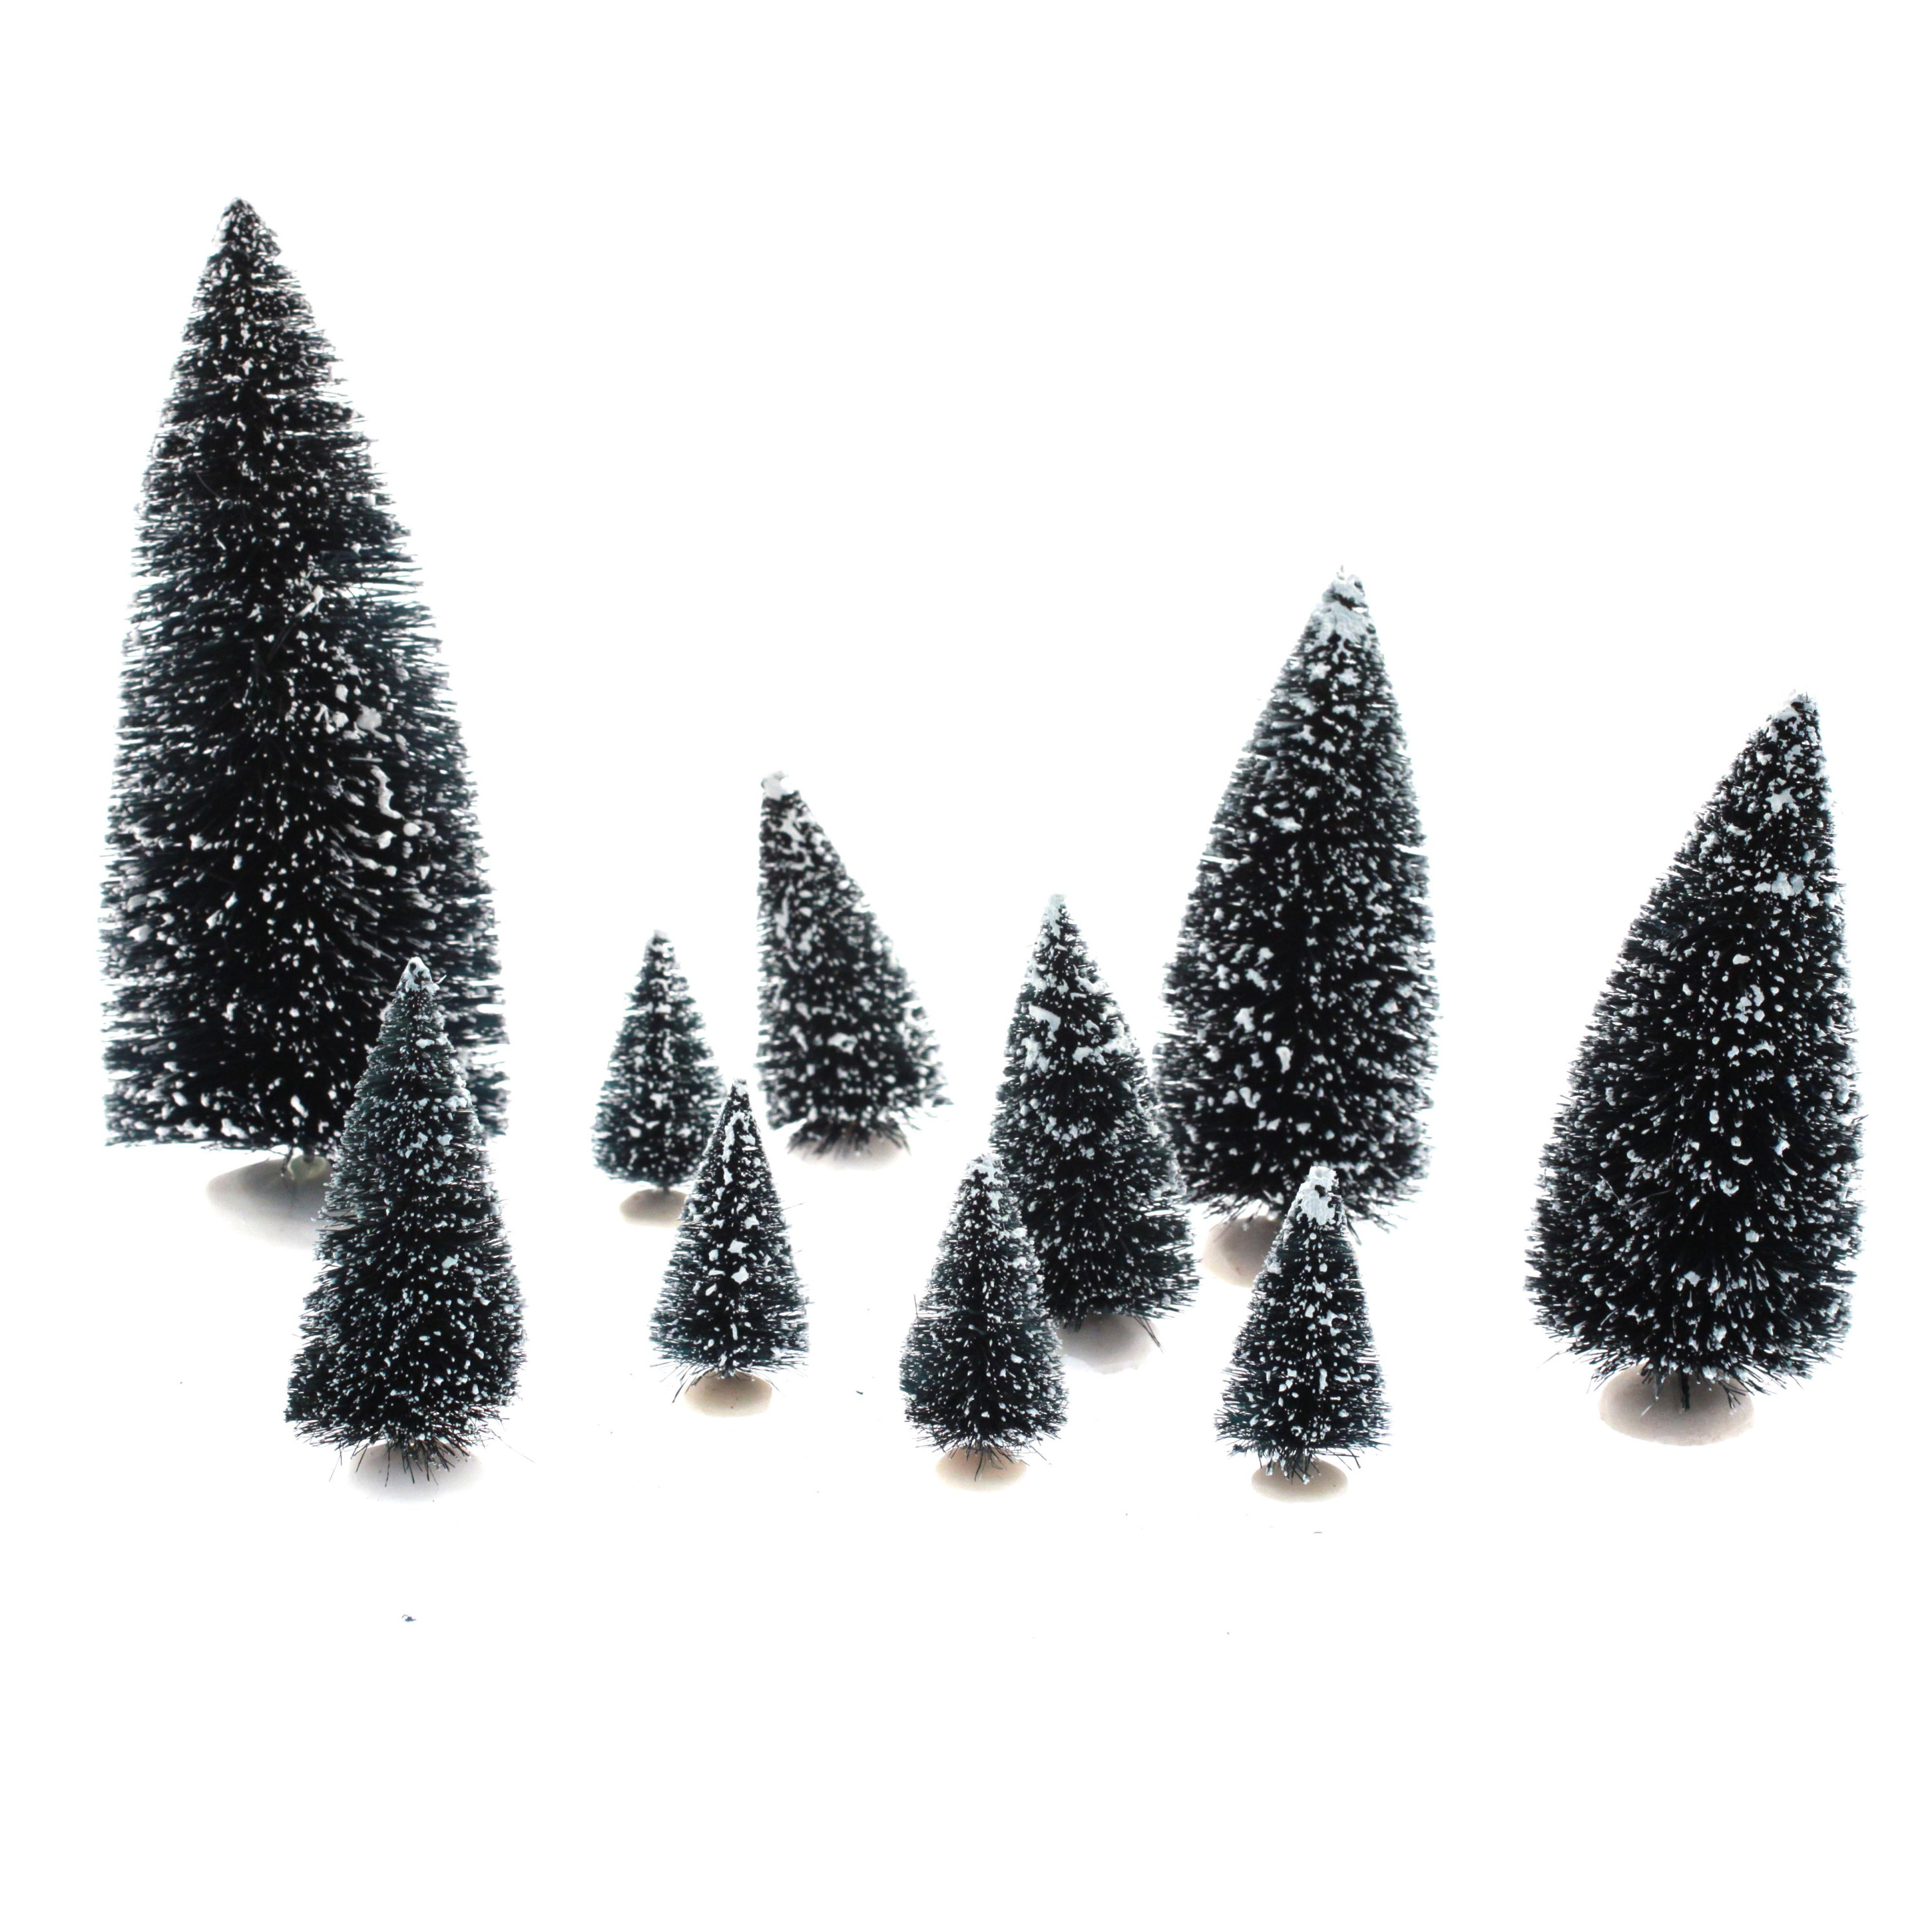 Feeric lights and christmas- kerstdorp miniatuur boompjes 20x stuks